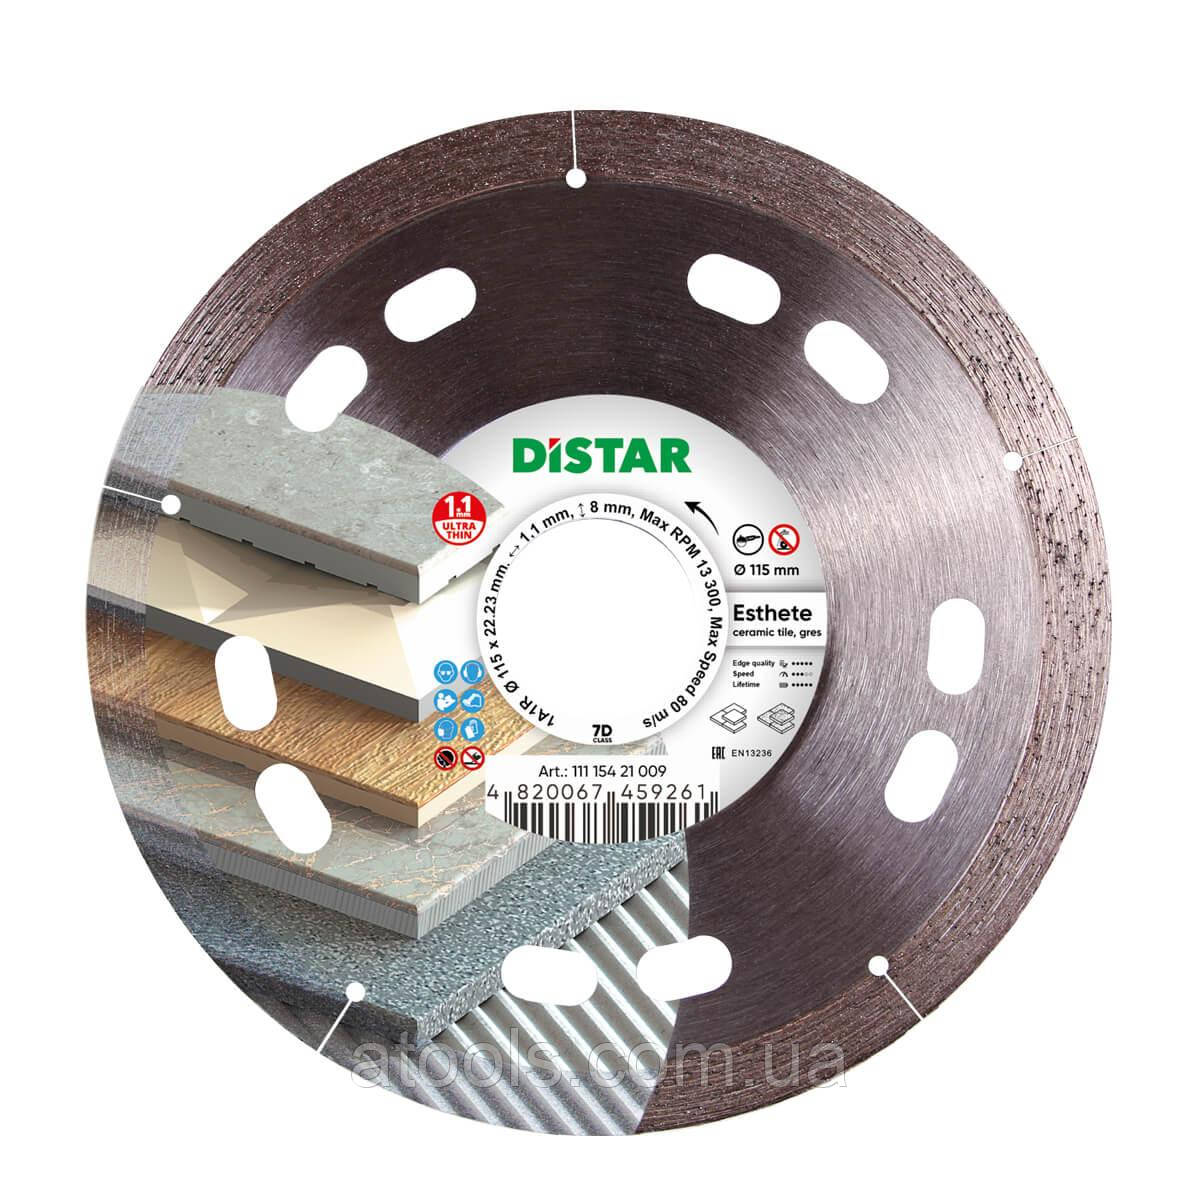 Алмазний відрізний диск Distar Esthete 1A1R 115x1.1/0.8x8x22.23 (11115421009)